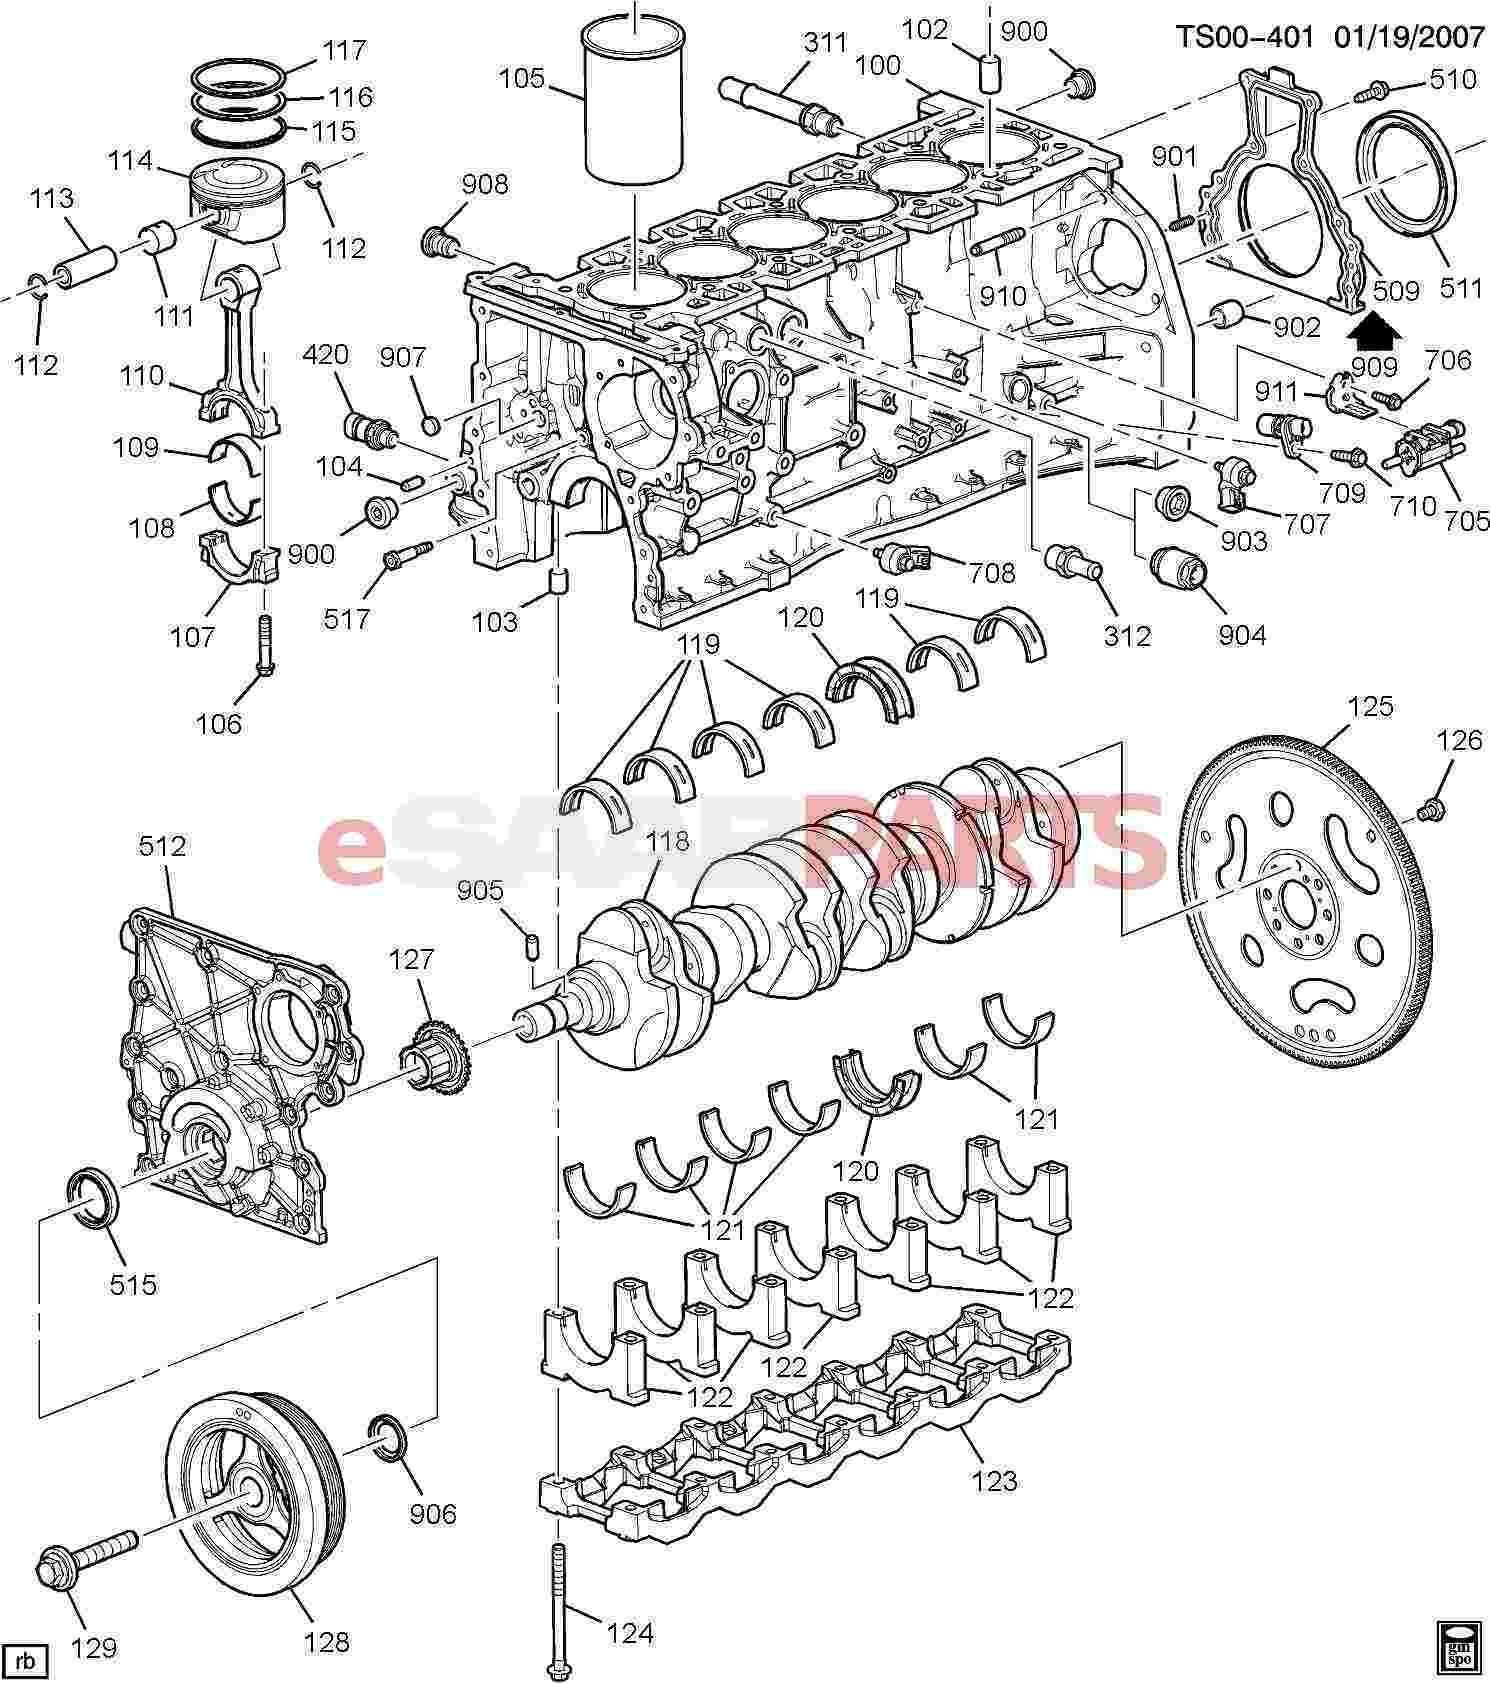 Car Part Diagram Exterior Car Parts Labeled Diagram Of Car Part Diagram Exterior